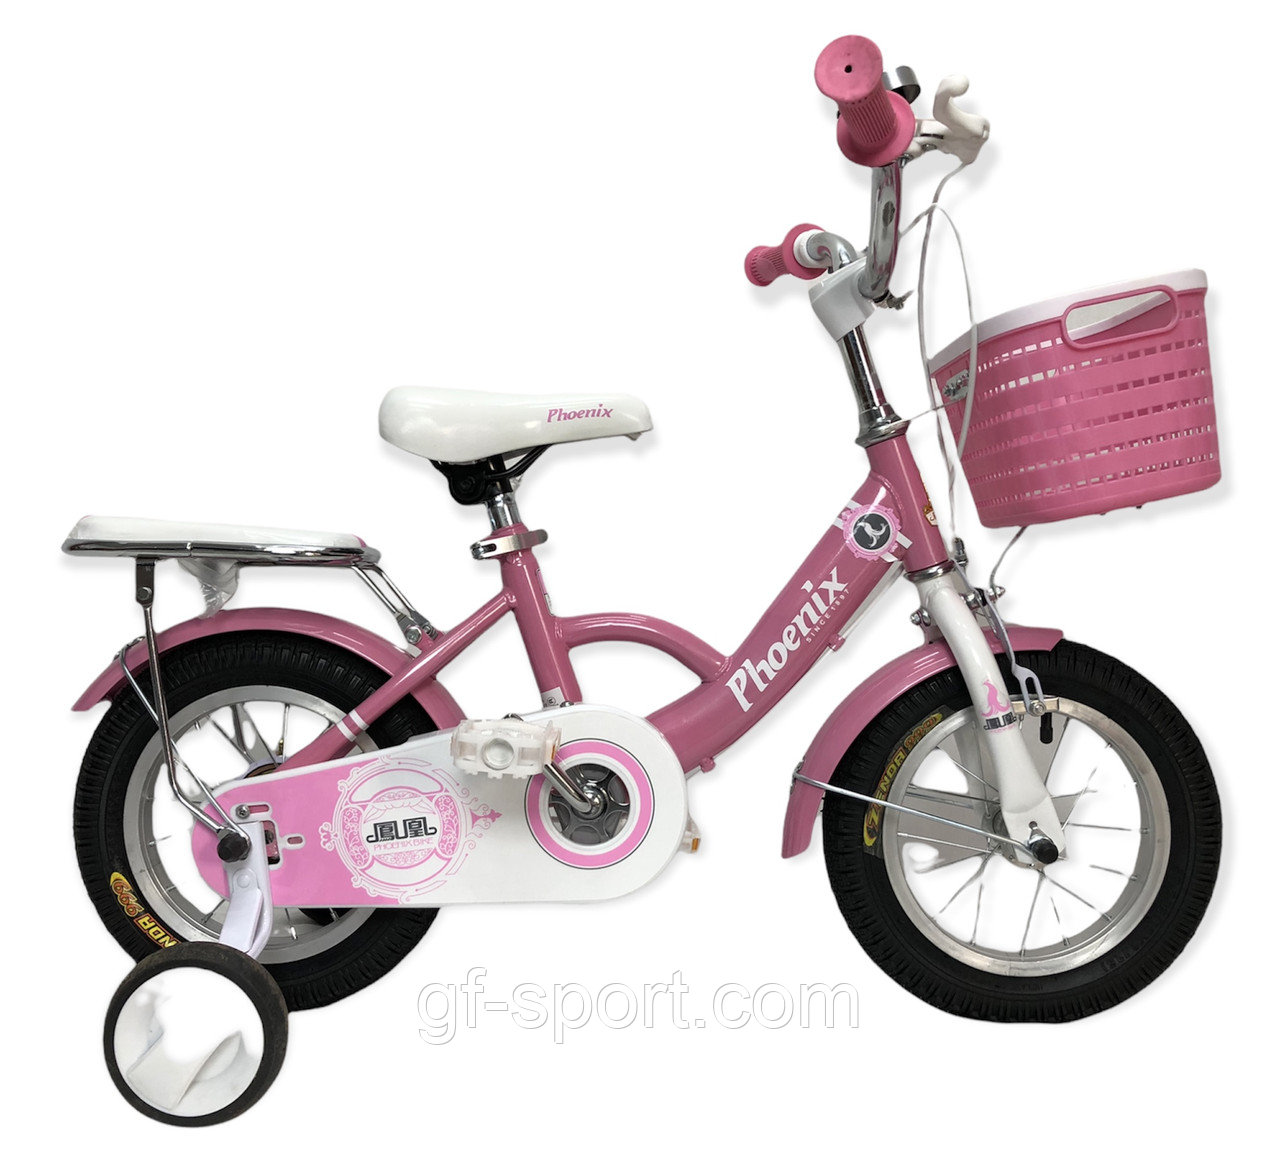 Велосипед Phoenix розовый оригинал детский с холостым ходом 12 размер (509-12)